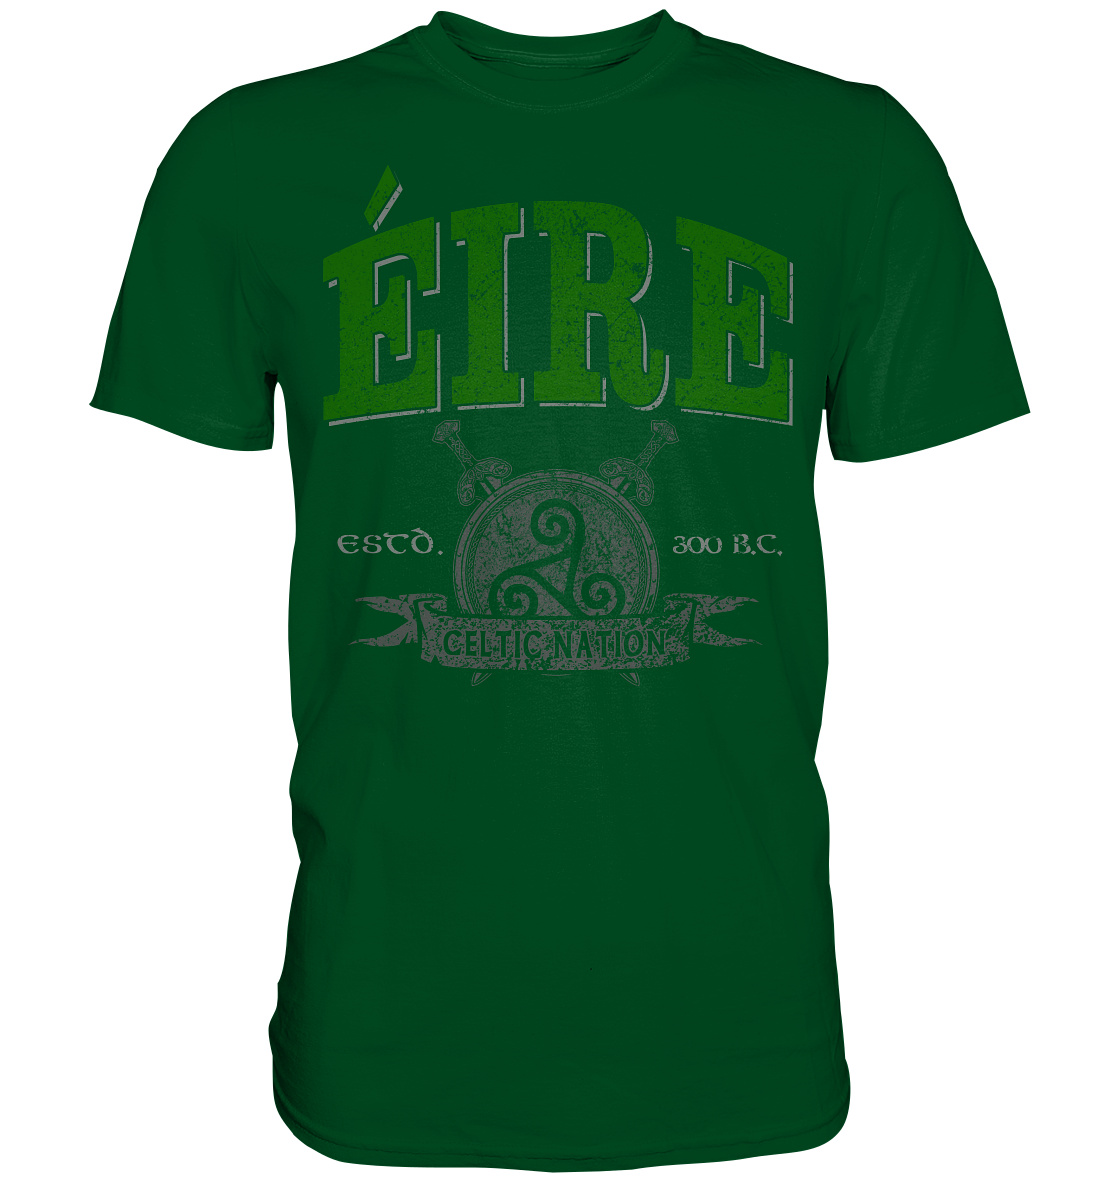 Éire "Celtic Nation" - Premium Shirt